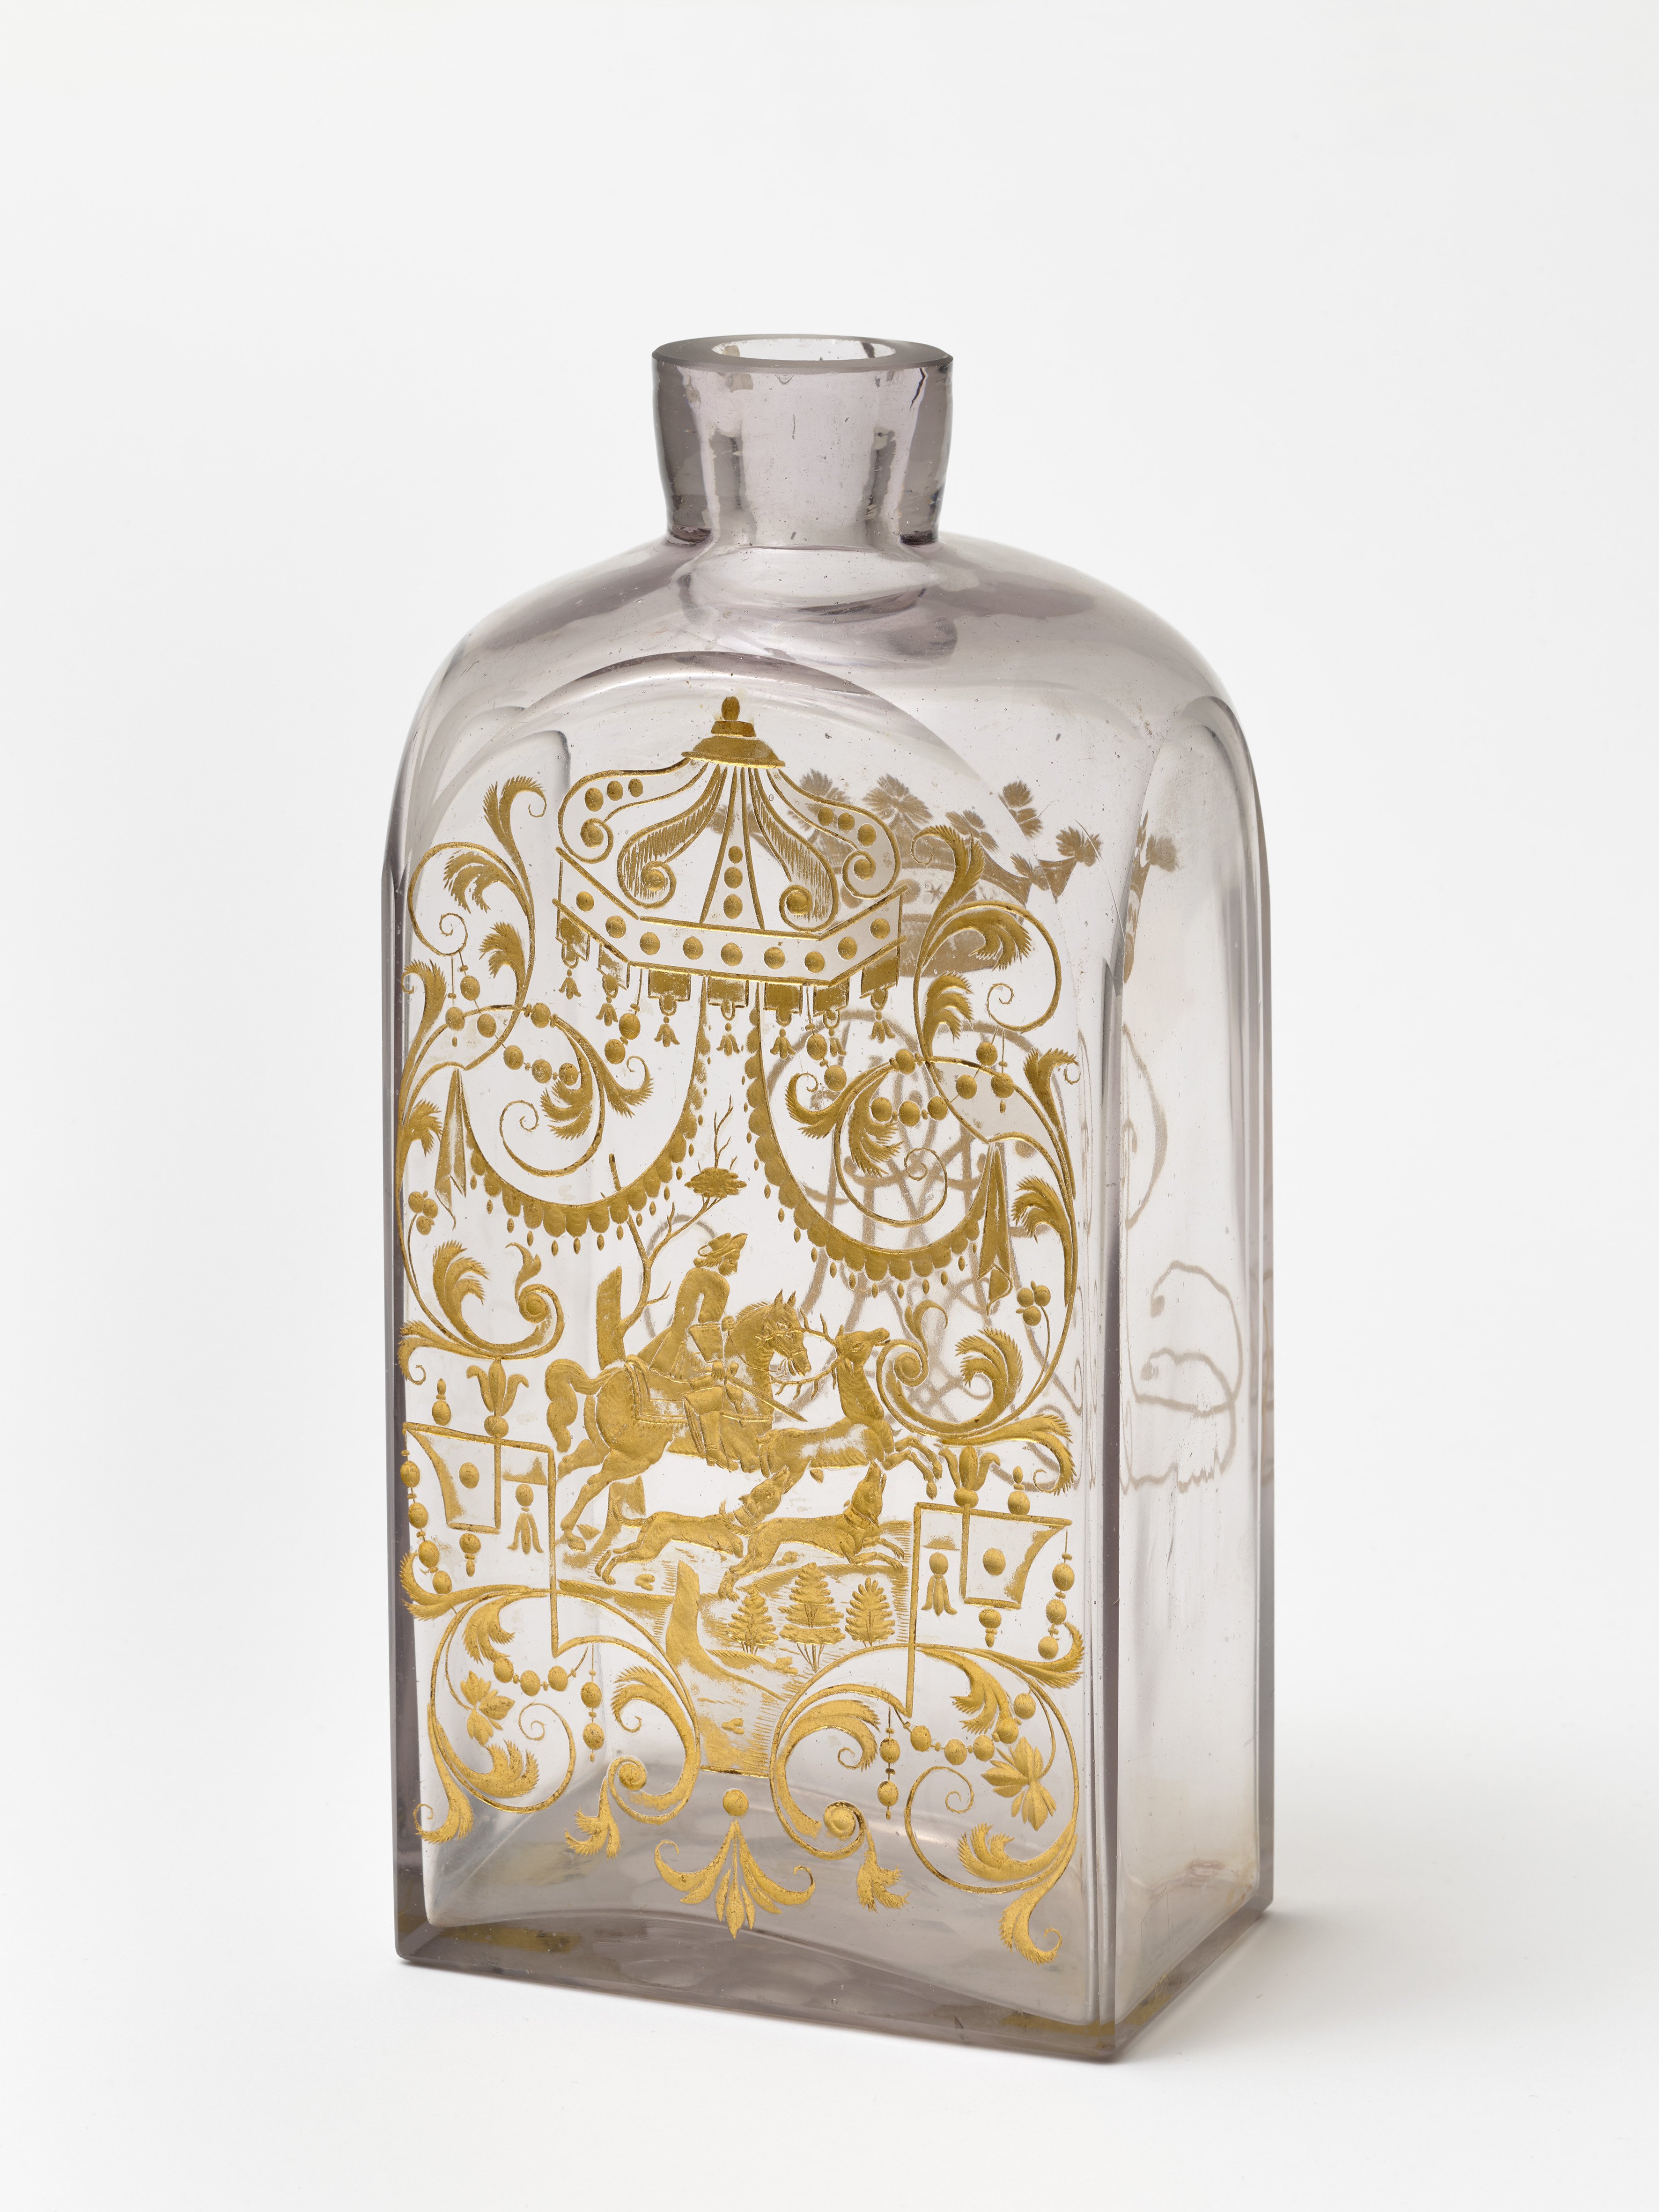 Vergoldete Glasflasche, um 1720 (Städtisches Museum Schloss Rheydt CC BY)